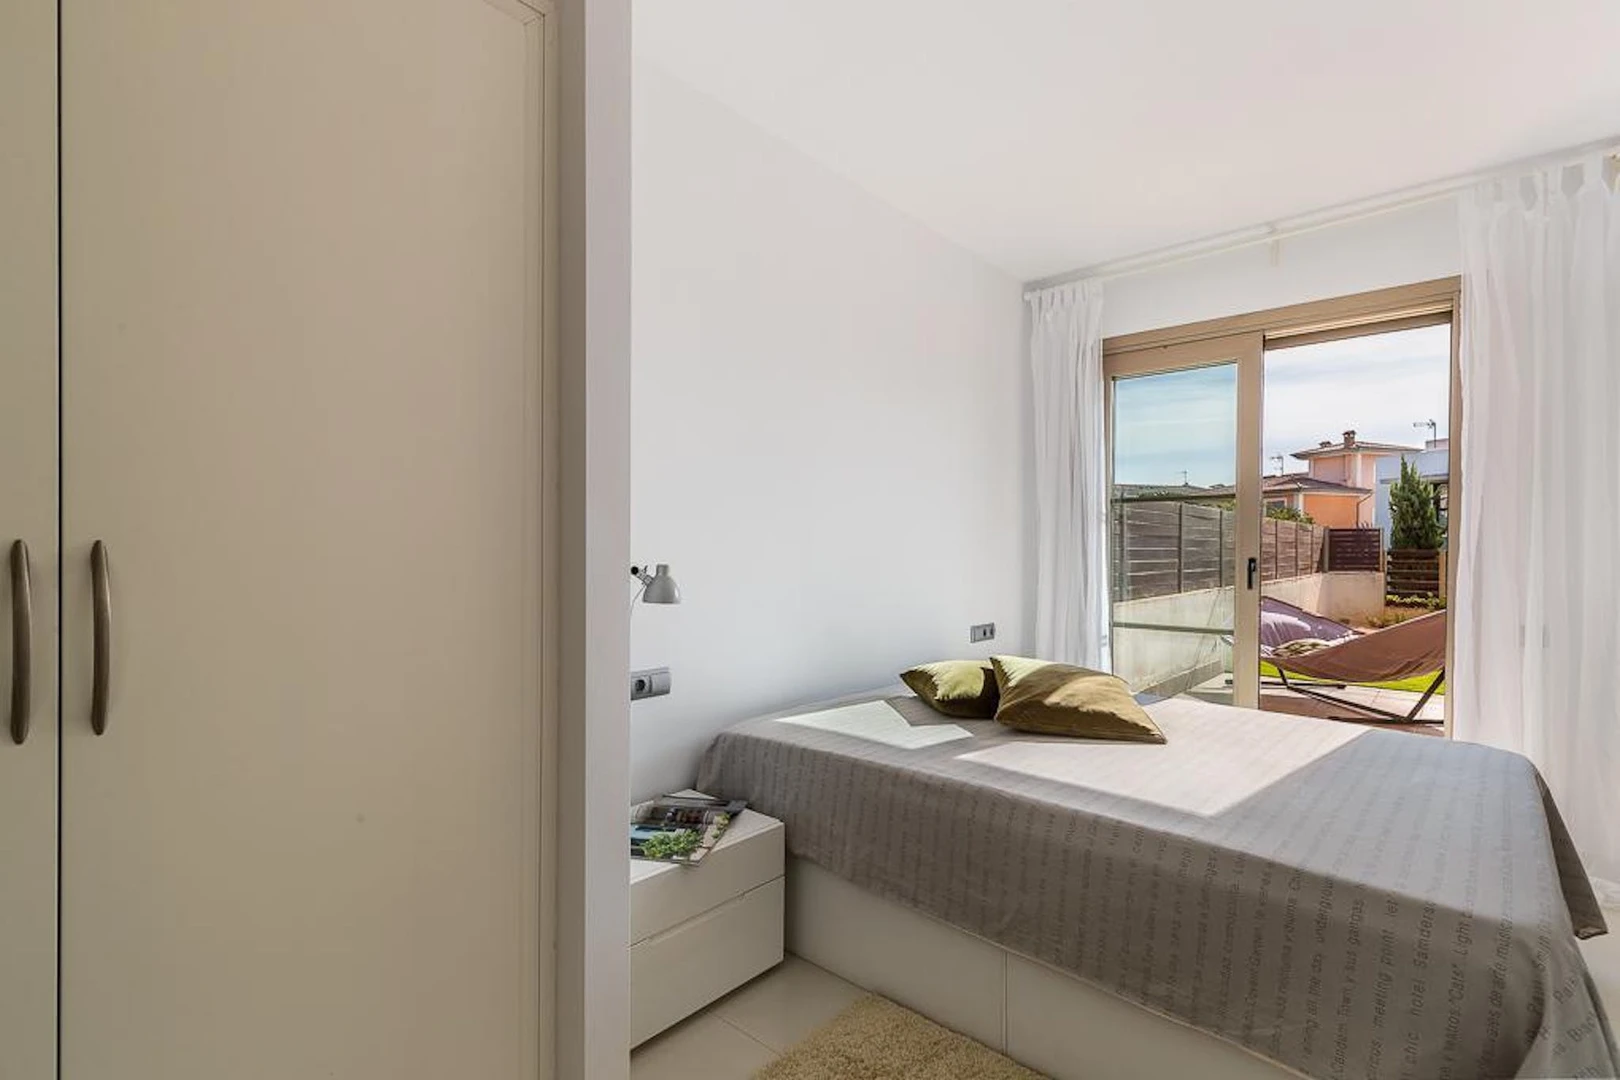 Accommodation in the centre of Palma De Mallorca